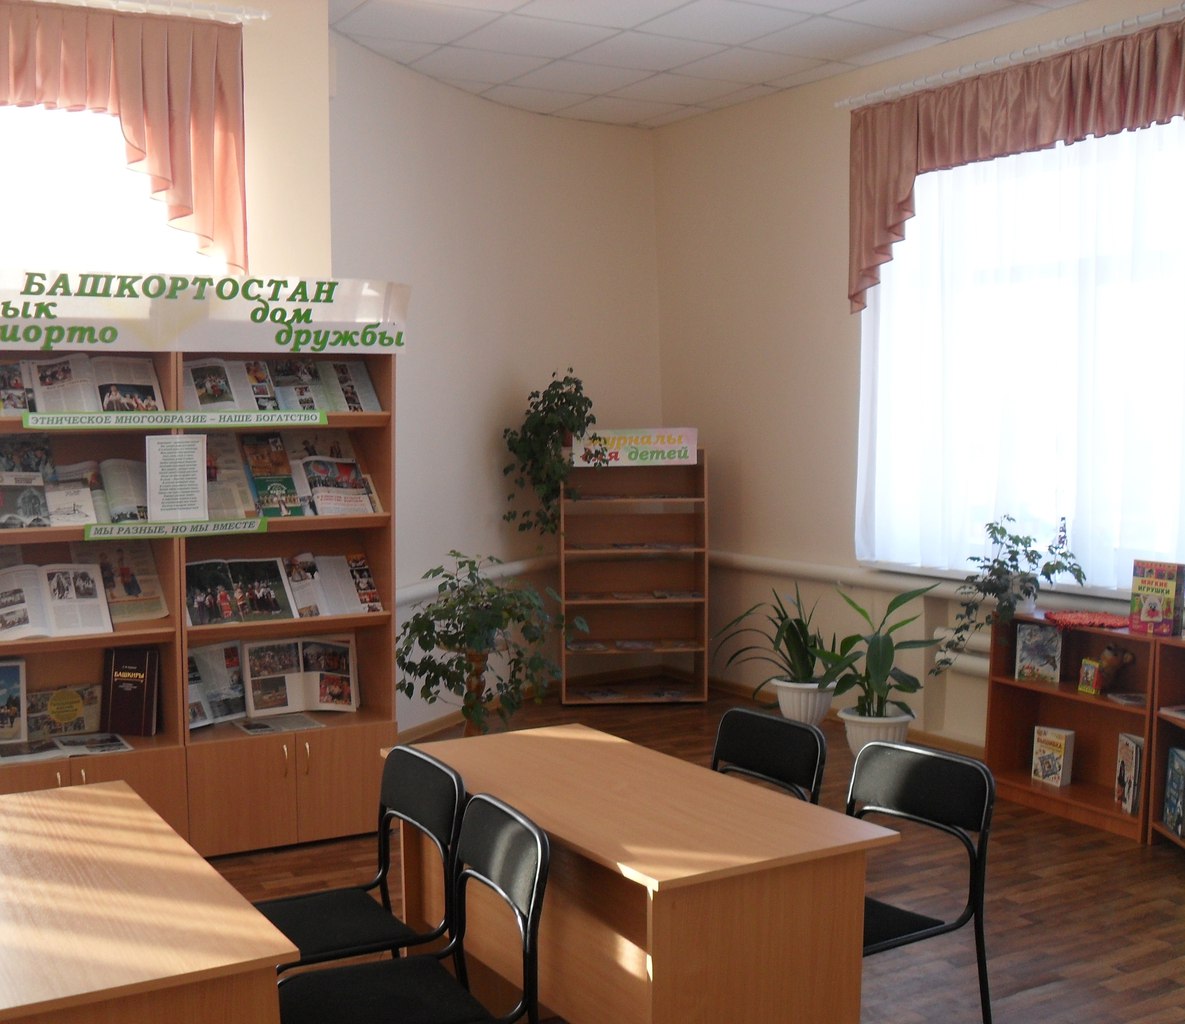 Усак-Кичуская сельская модельная библиотека